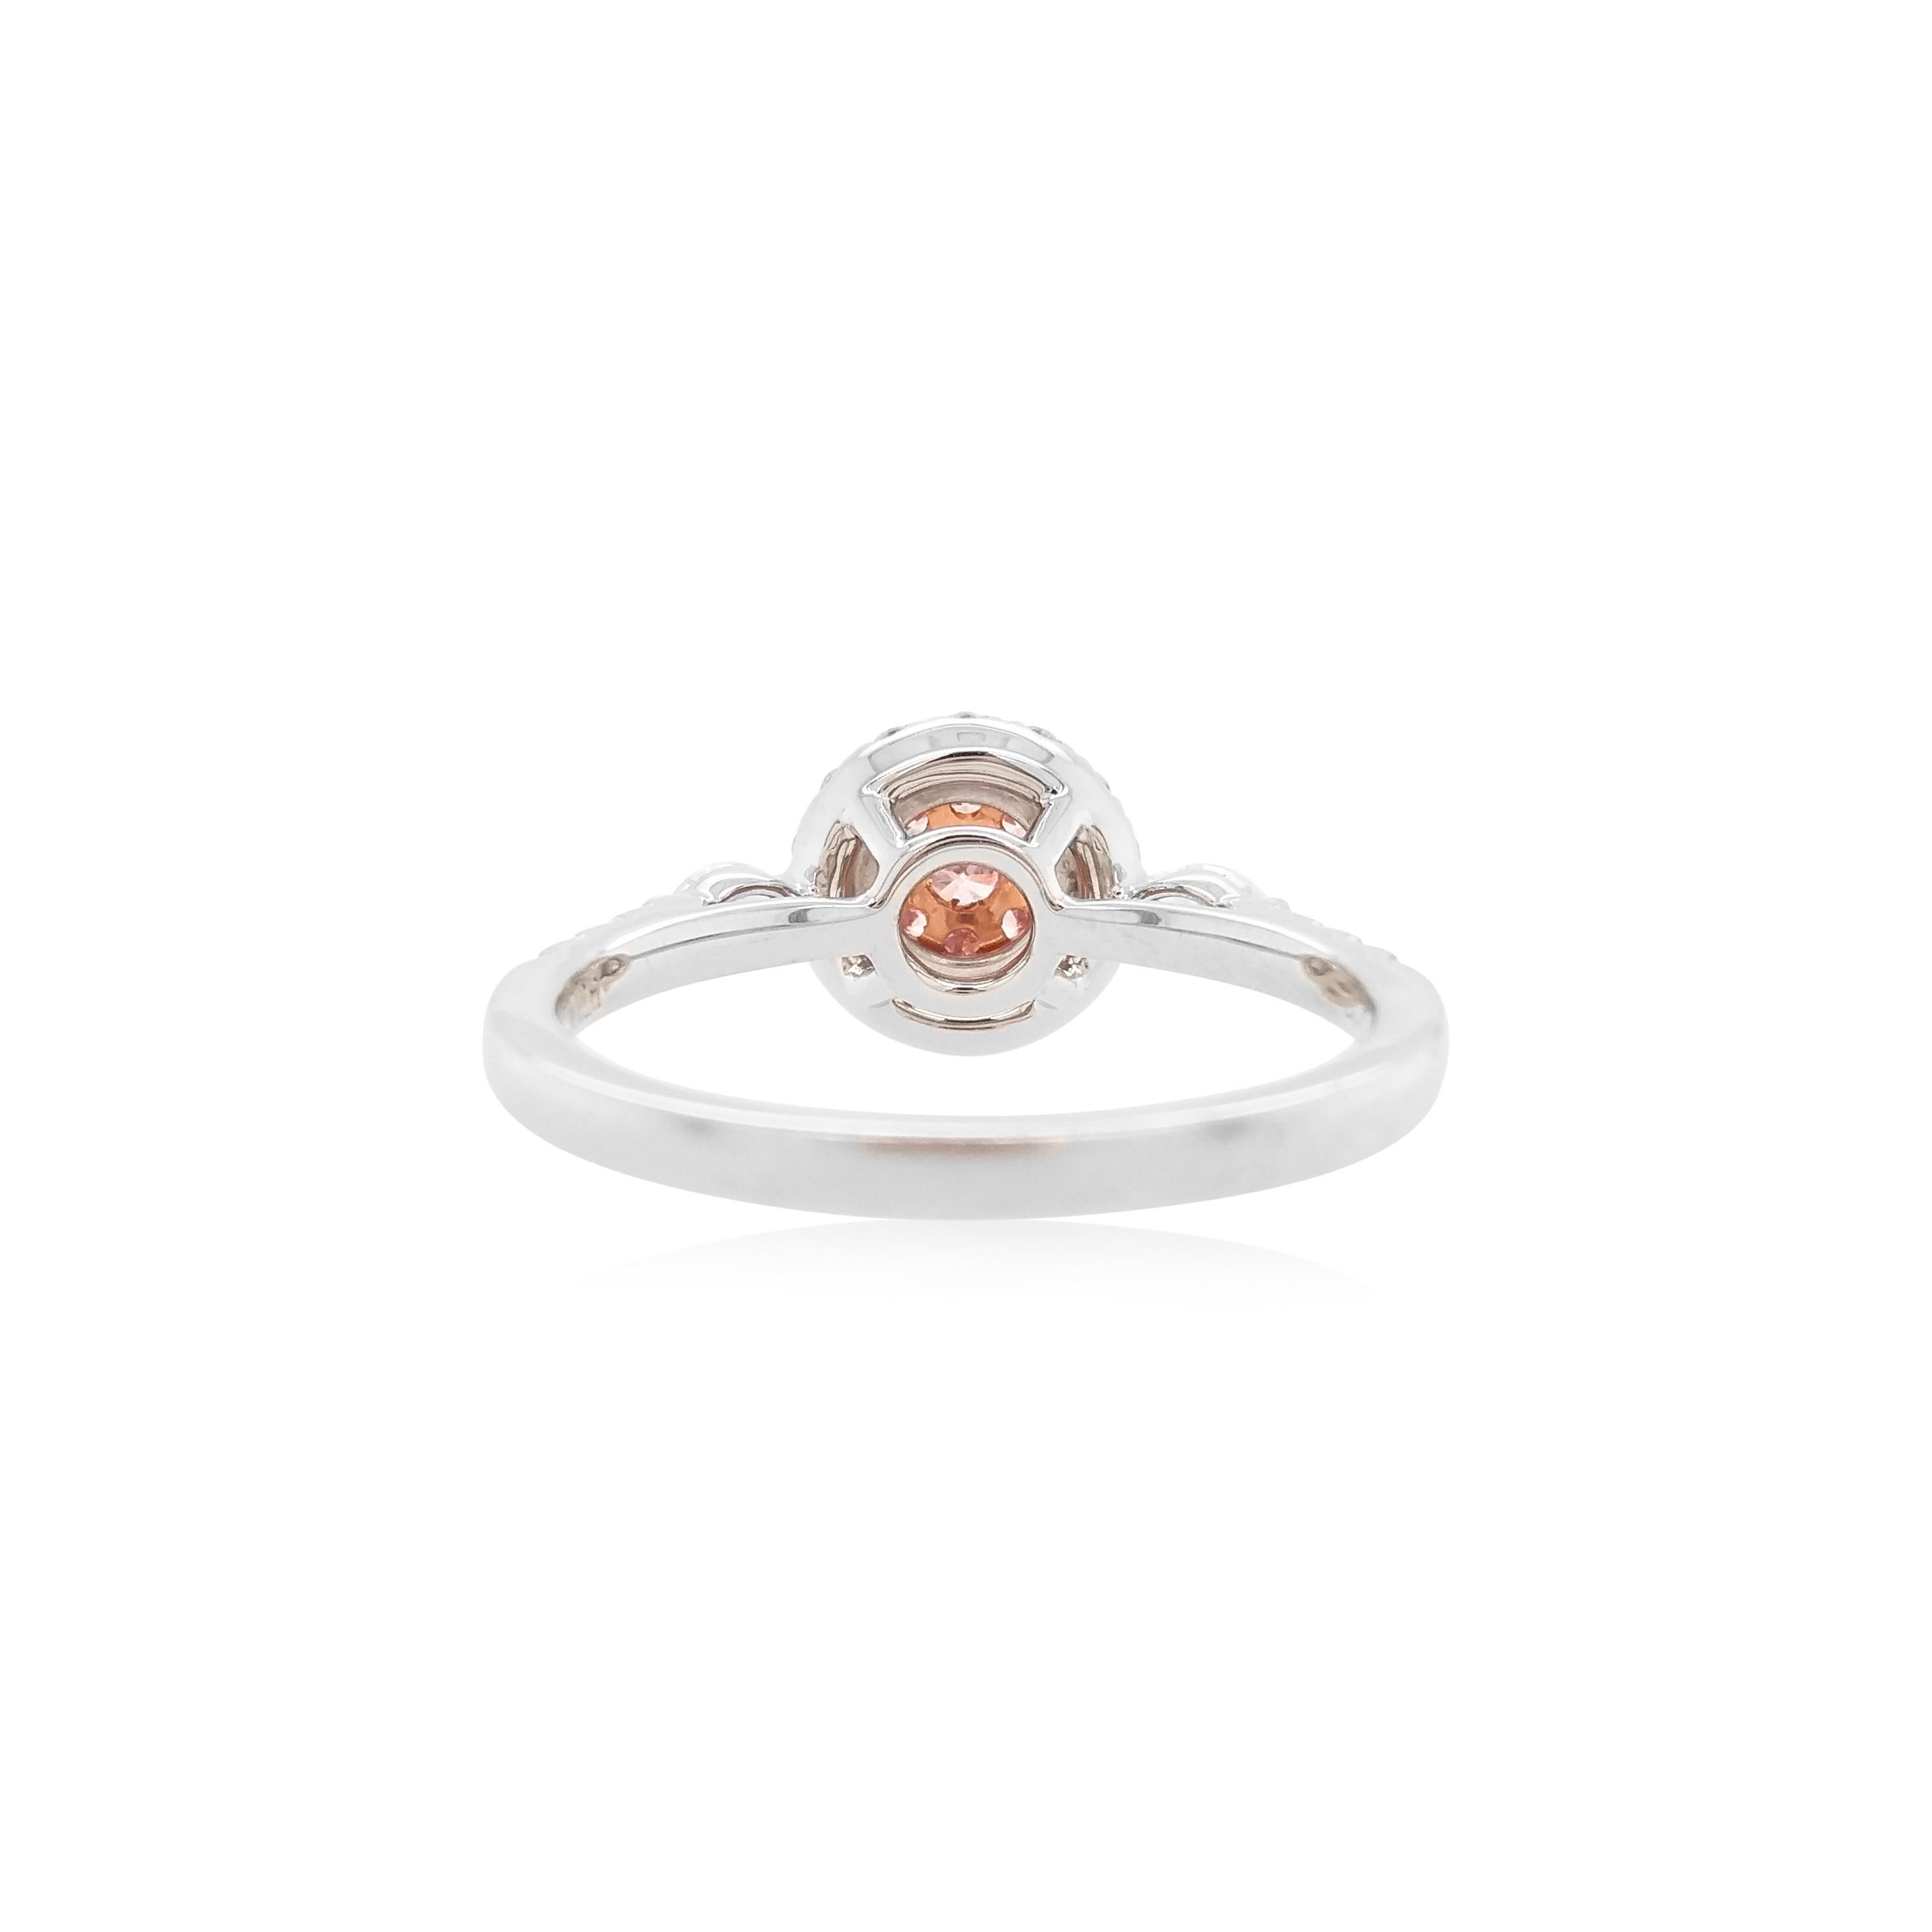 Bei diesem modernen Platinring stehen pinkfarbene Argyle-Diamanten von außergewöhnlicher Qualität im Vordergrund, umgeben von einem Halo aus glitzernden weißen Diamanten und einem Paar marquiseförmiger weißer Diamanten an den Schultern. Eingefasst